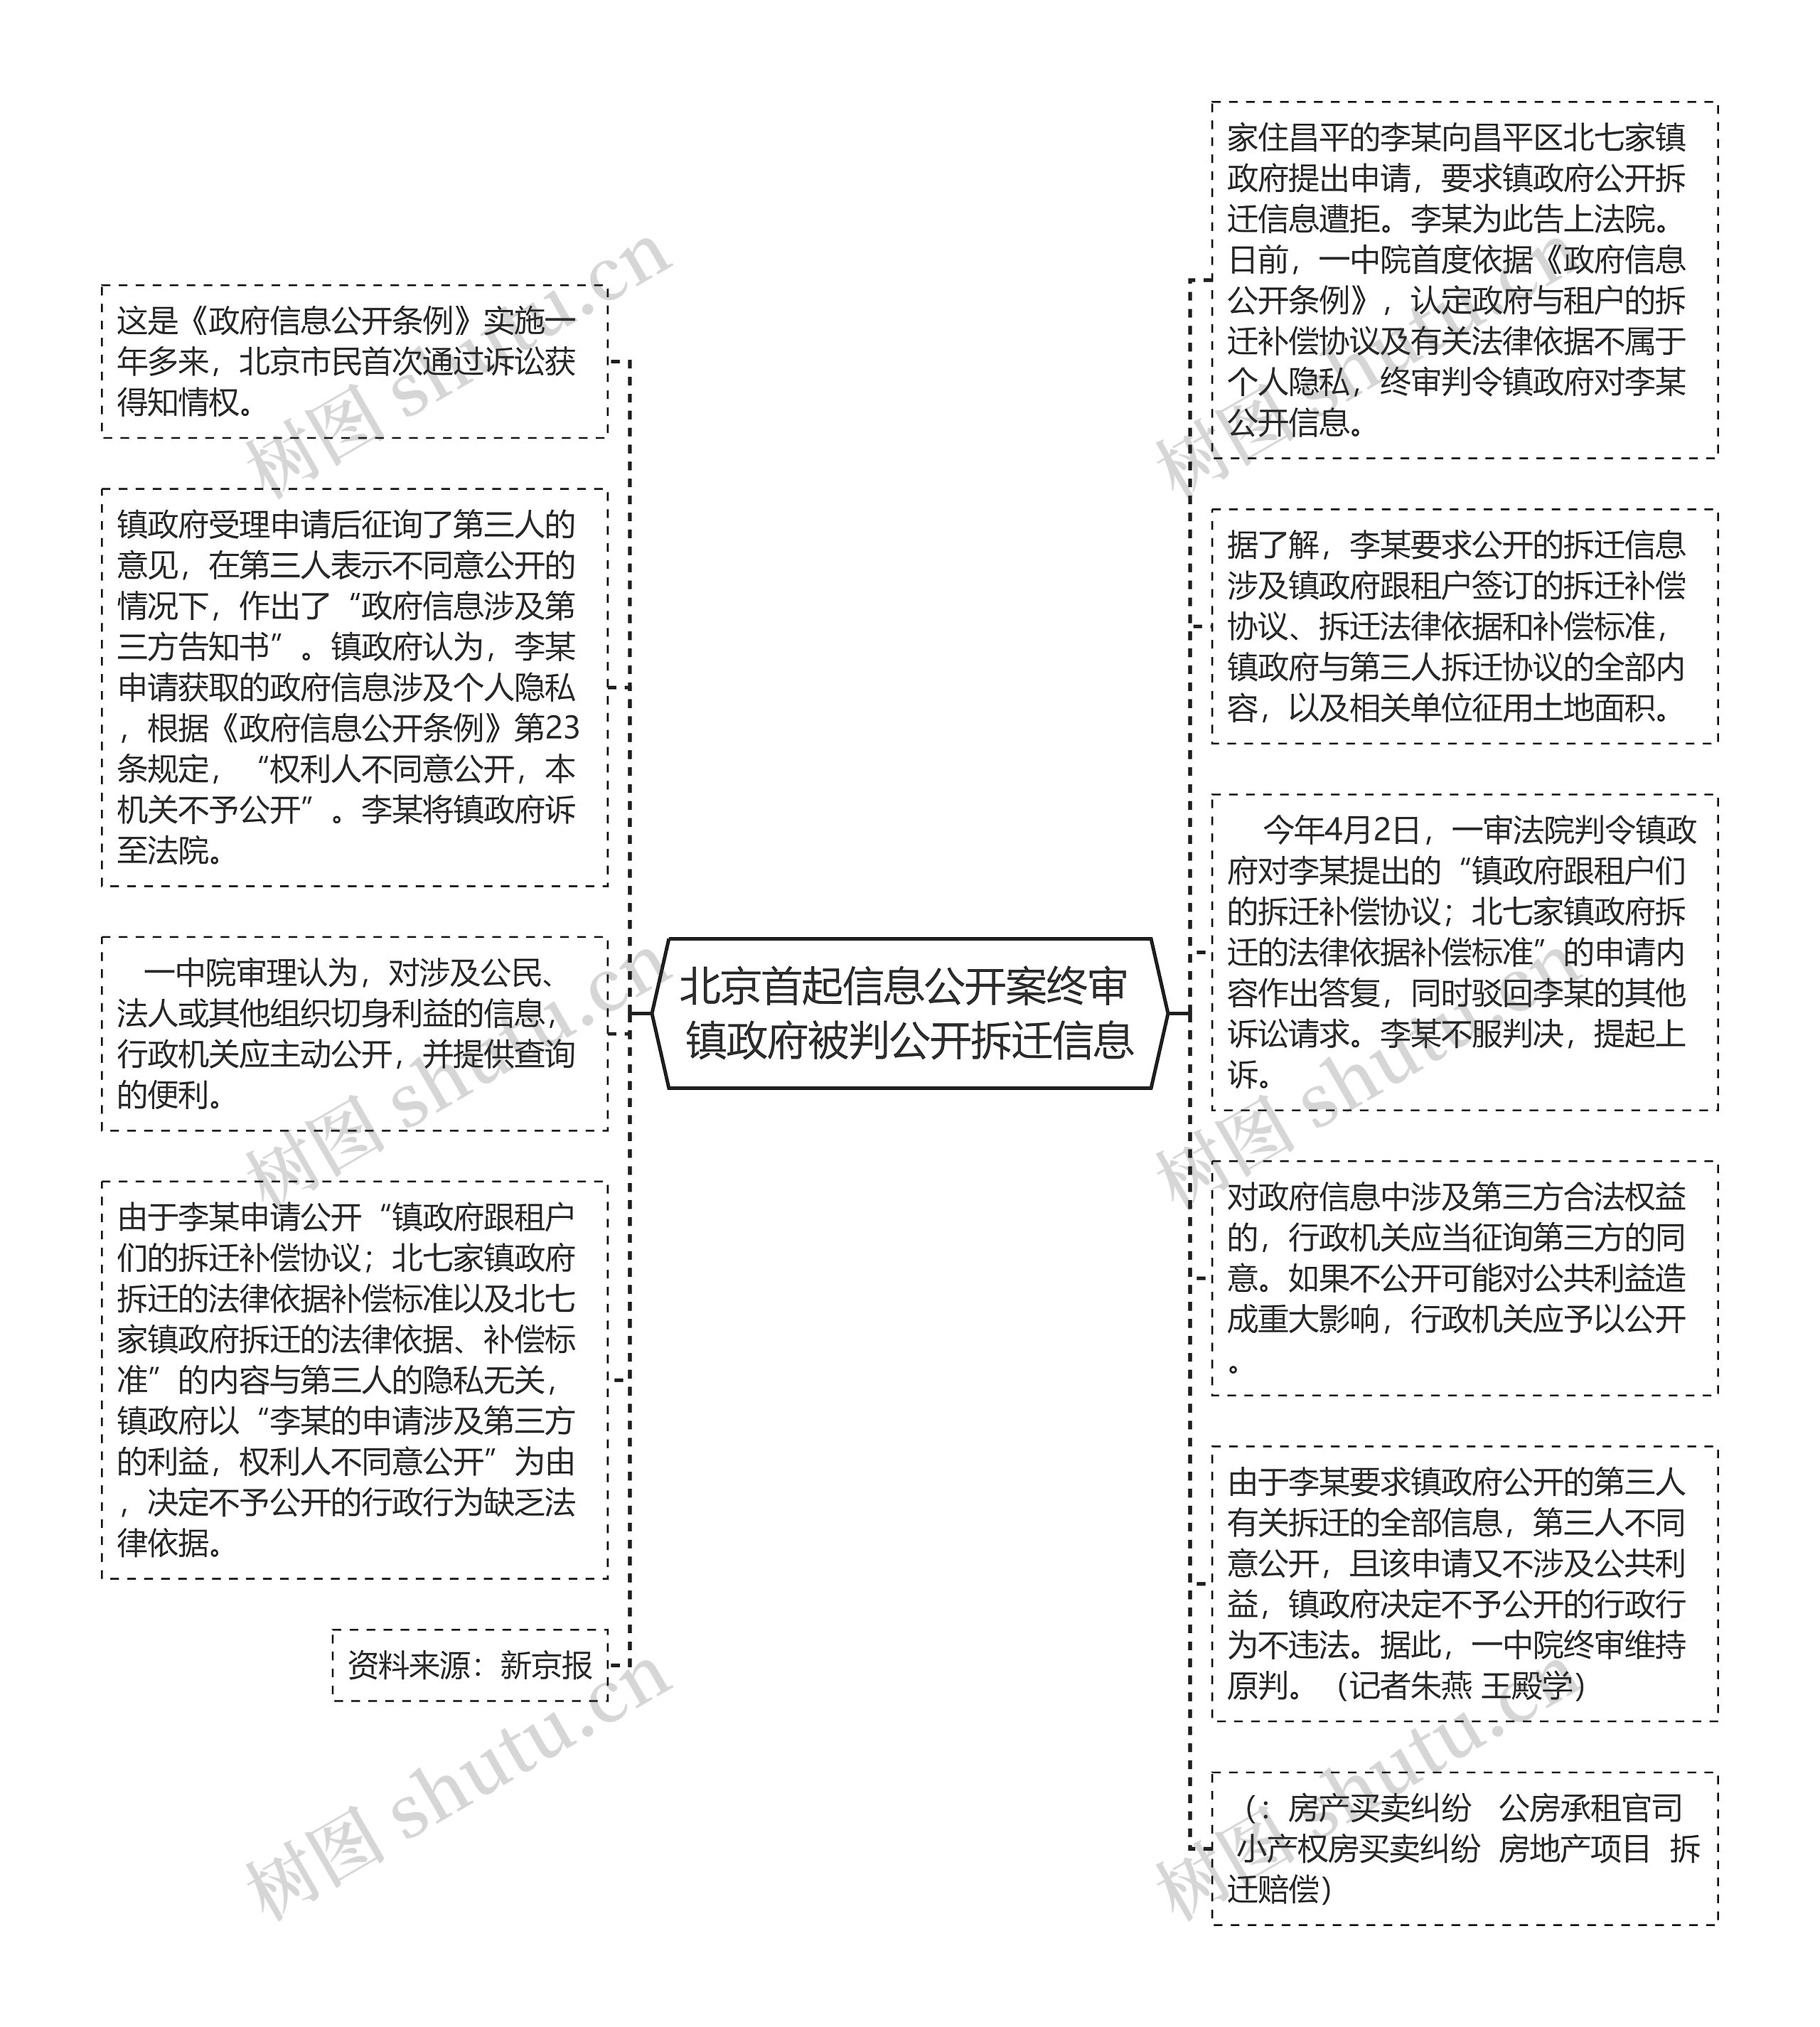 北京首起信息公开案终审 镇政府被判公开拆迁信息